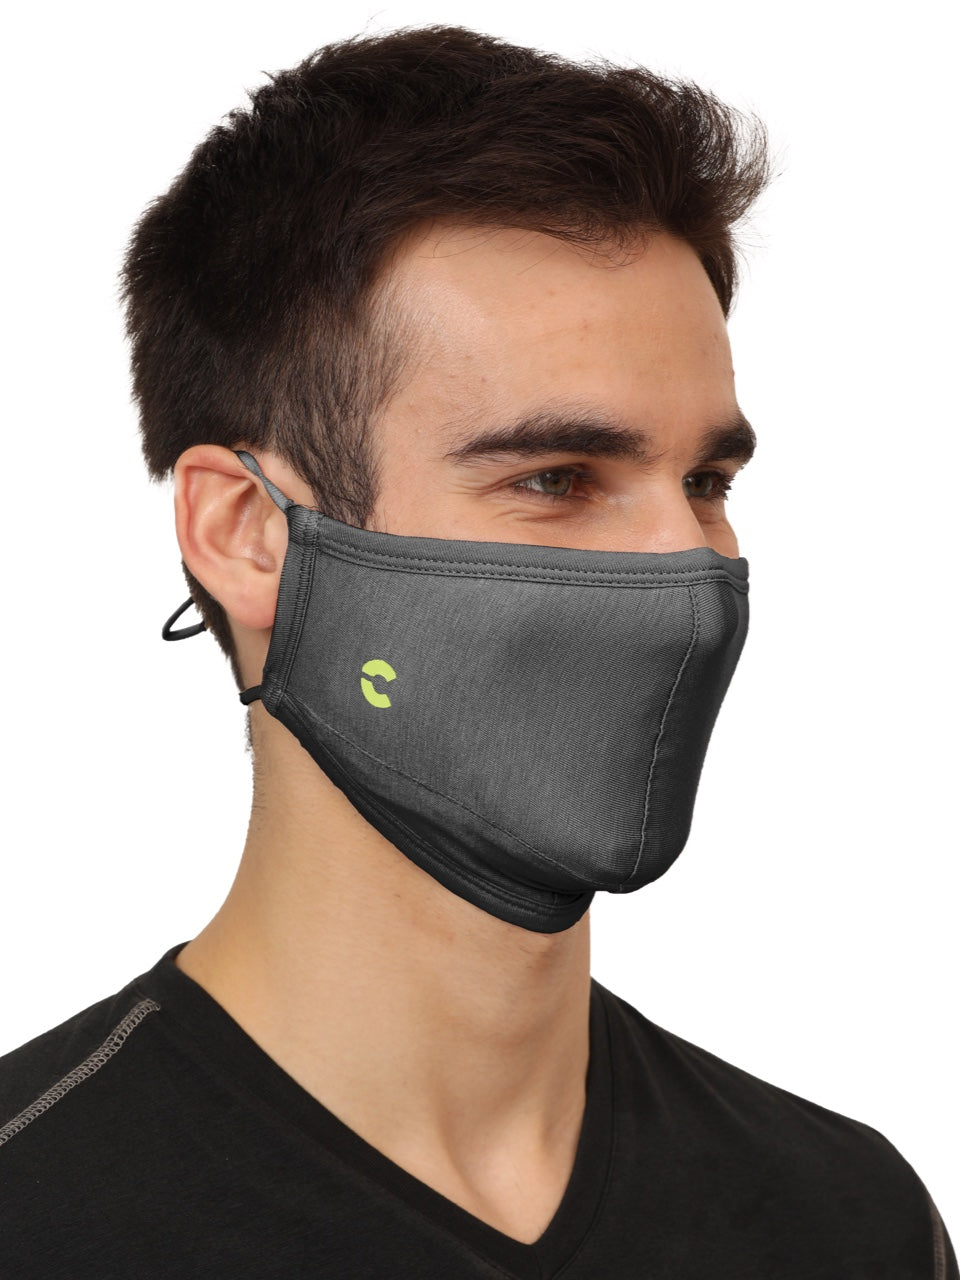 BreathePro Head Bound Masks (Fashion)  - Pack of 3